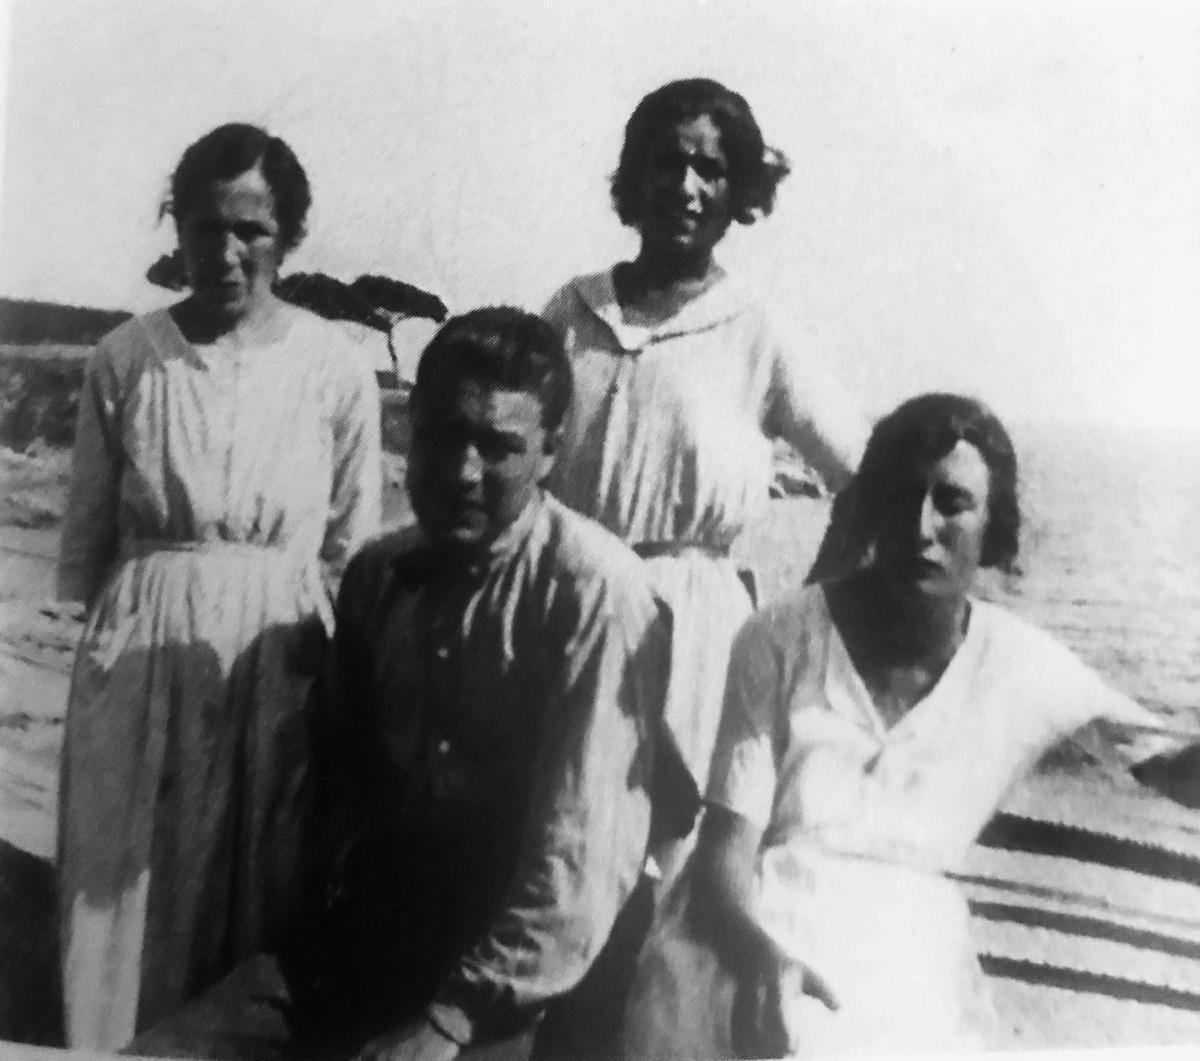 'Un cor furtiu. Vida de Josep Pla'. Maria Casadevall y tres de sus hijos, Josep, Rosa y Maria Pla, en el Canadell hacia 1920.